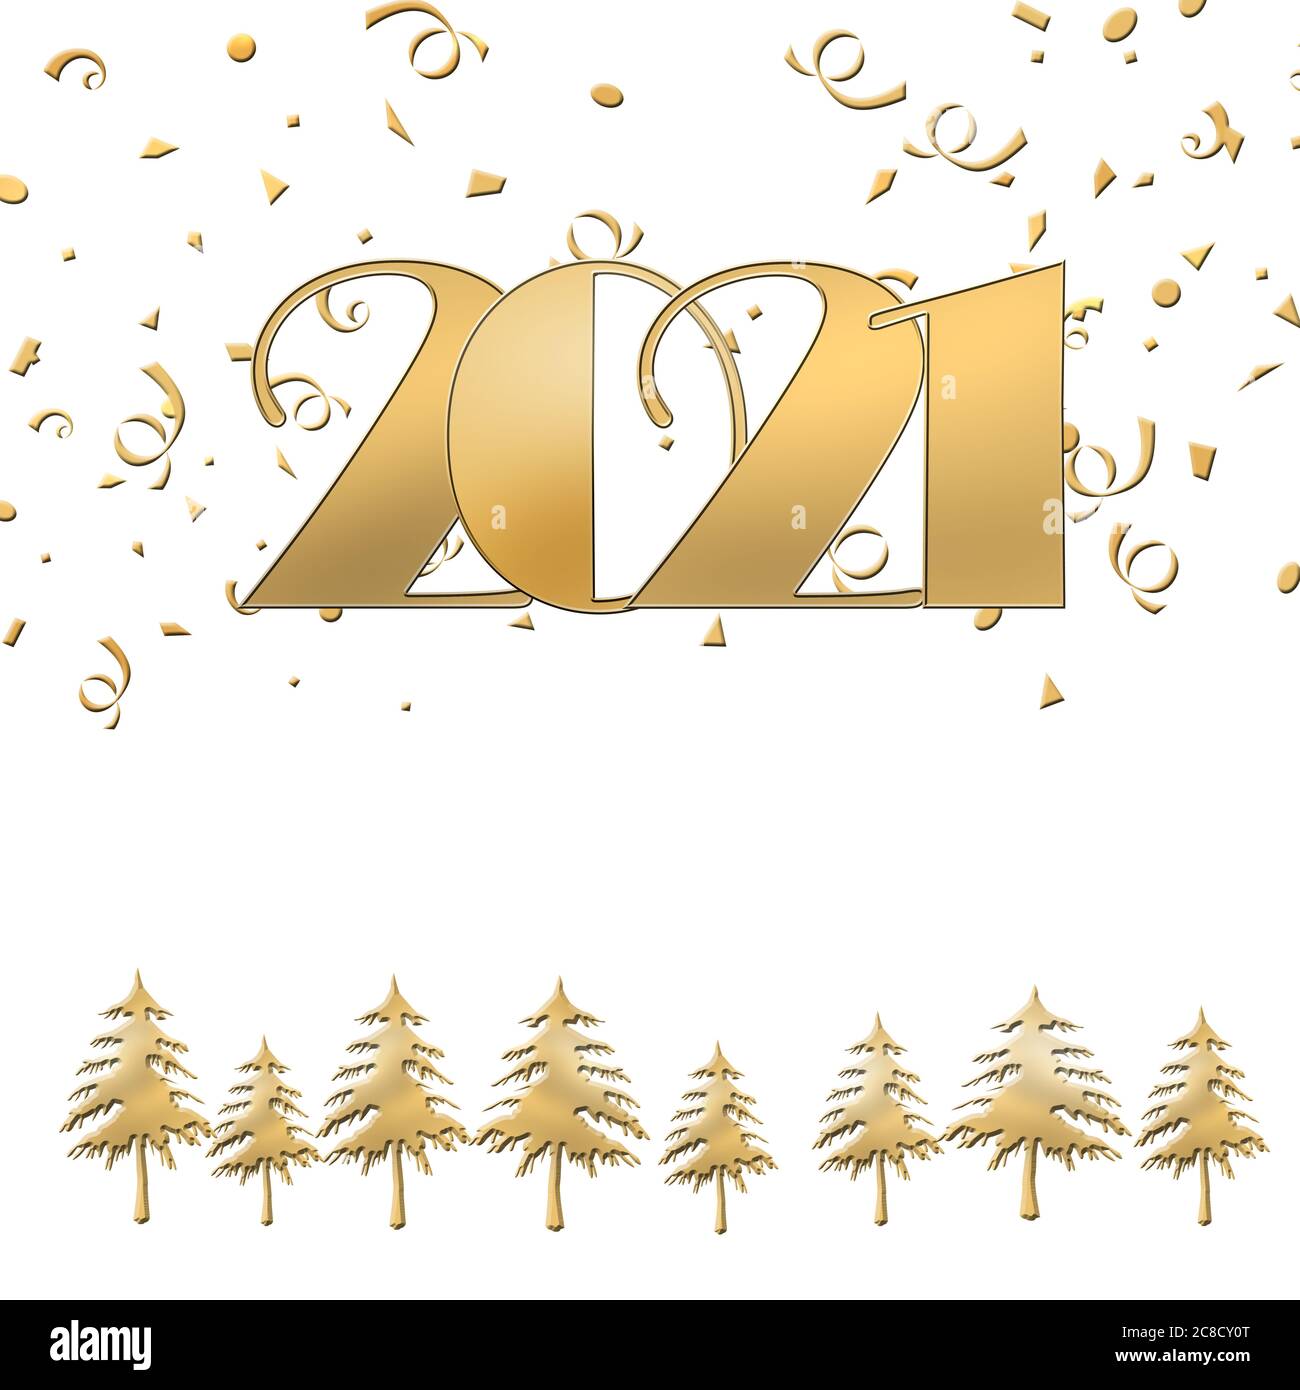 2021 bonne année Joyeux Noël texte d'or sur fond blanc avec des arbres de  noël et des confetti d'or. Elégant or 2021 avec lumière. Modèle de texte  minimaliste. Espace de copie, maquette.